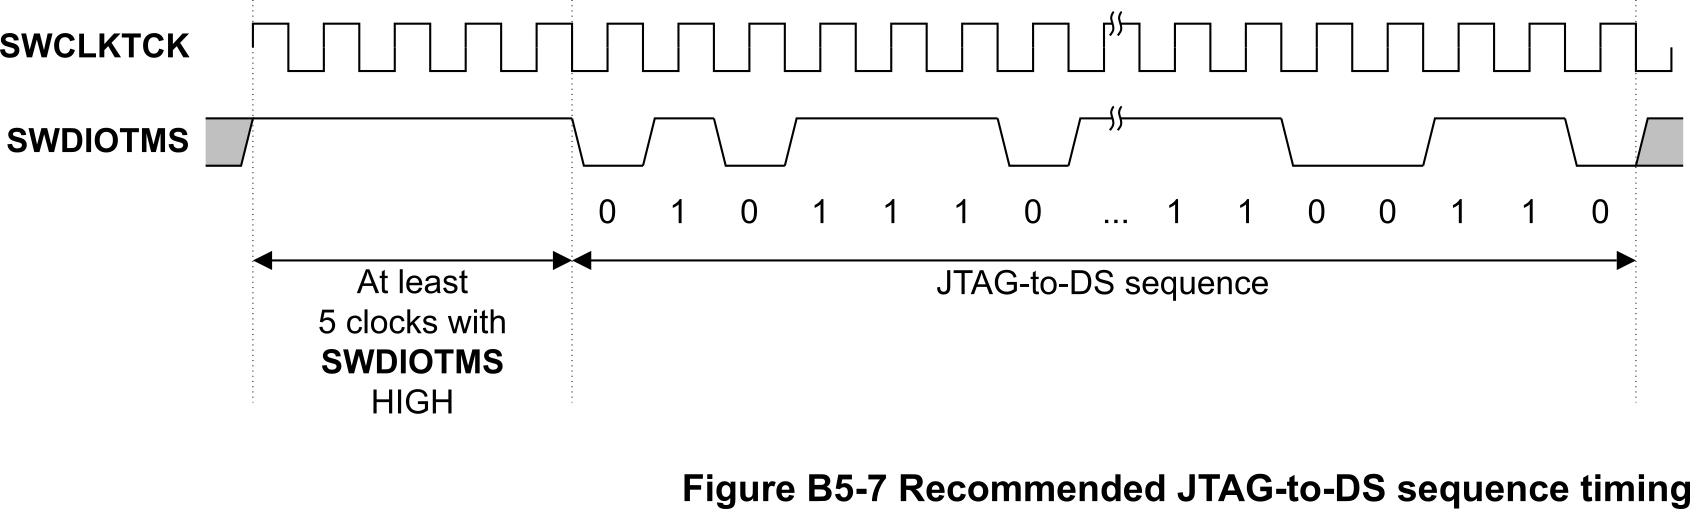 figure-b5-7.png